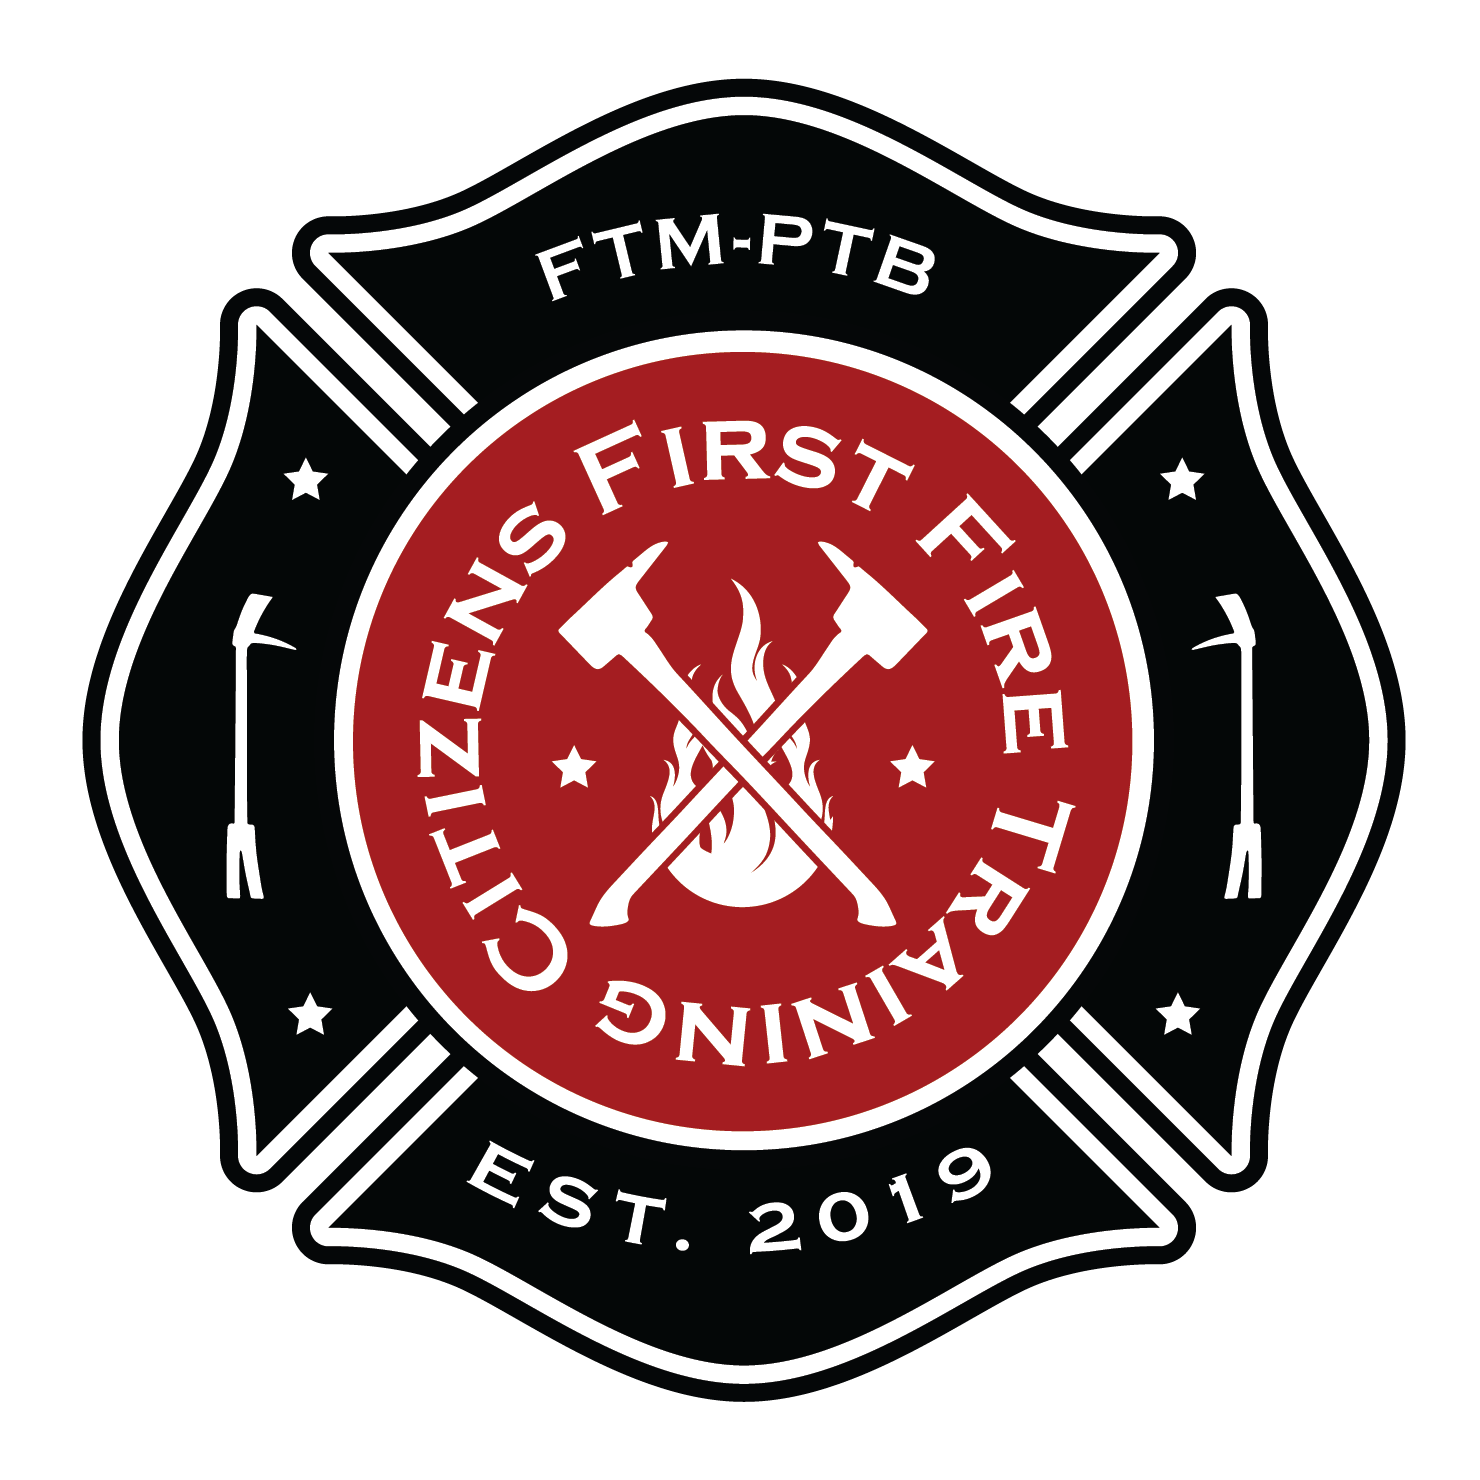 Citizen's First Fire Training